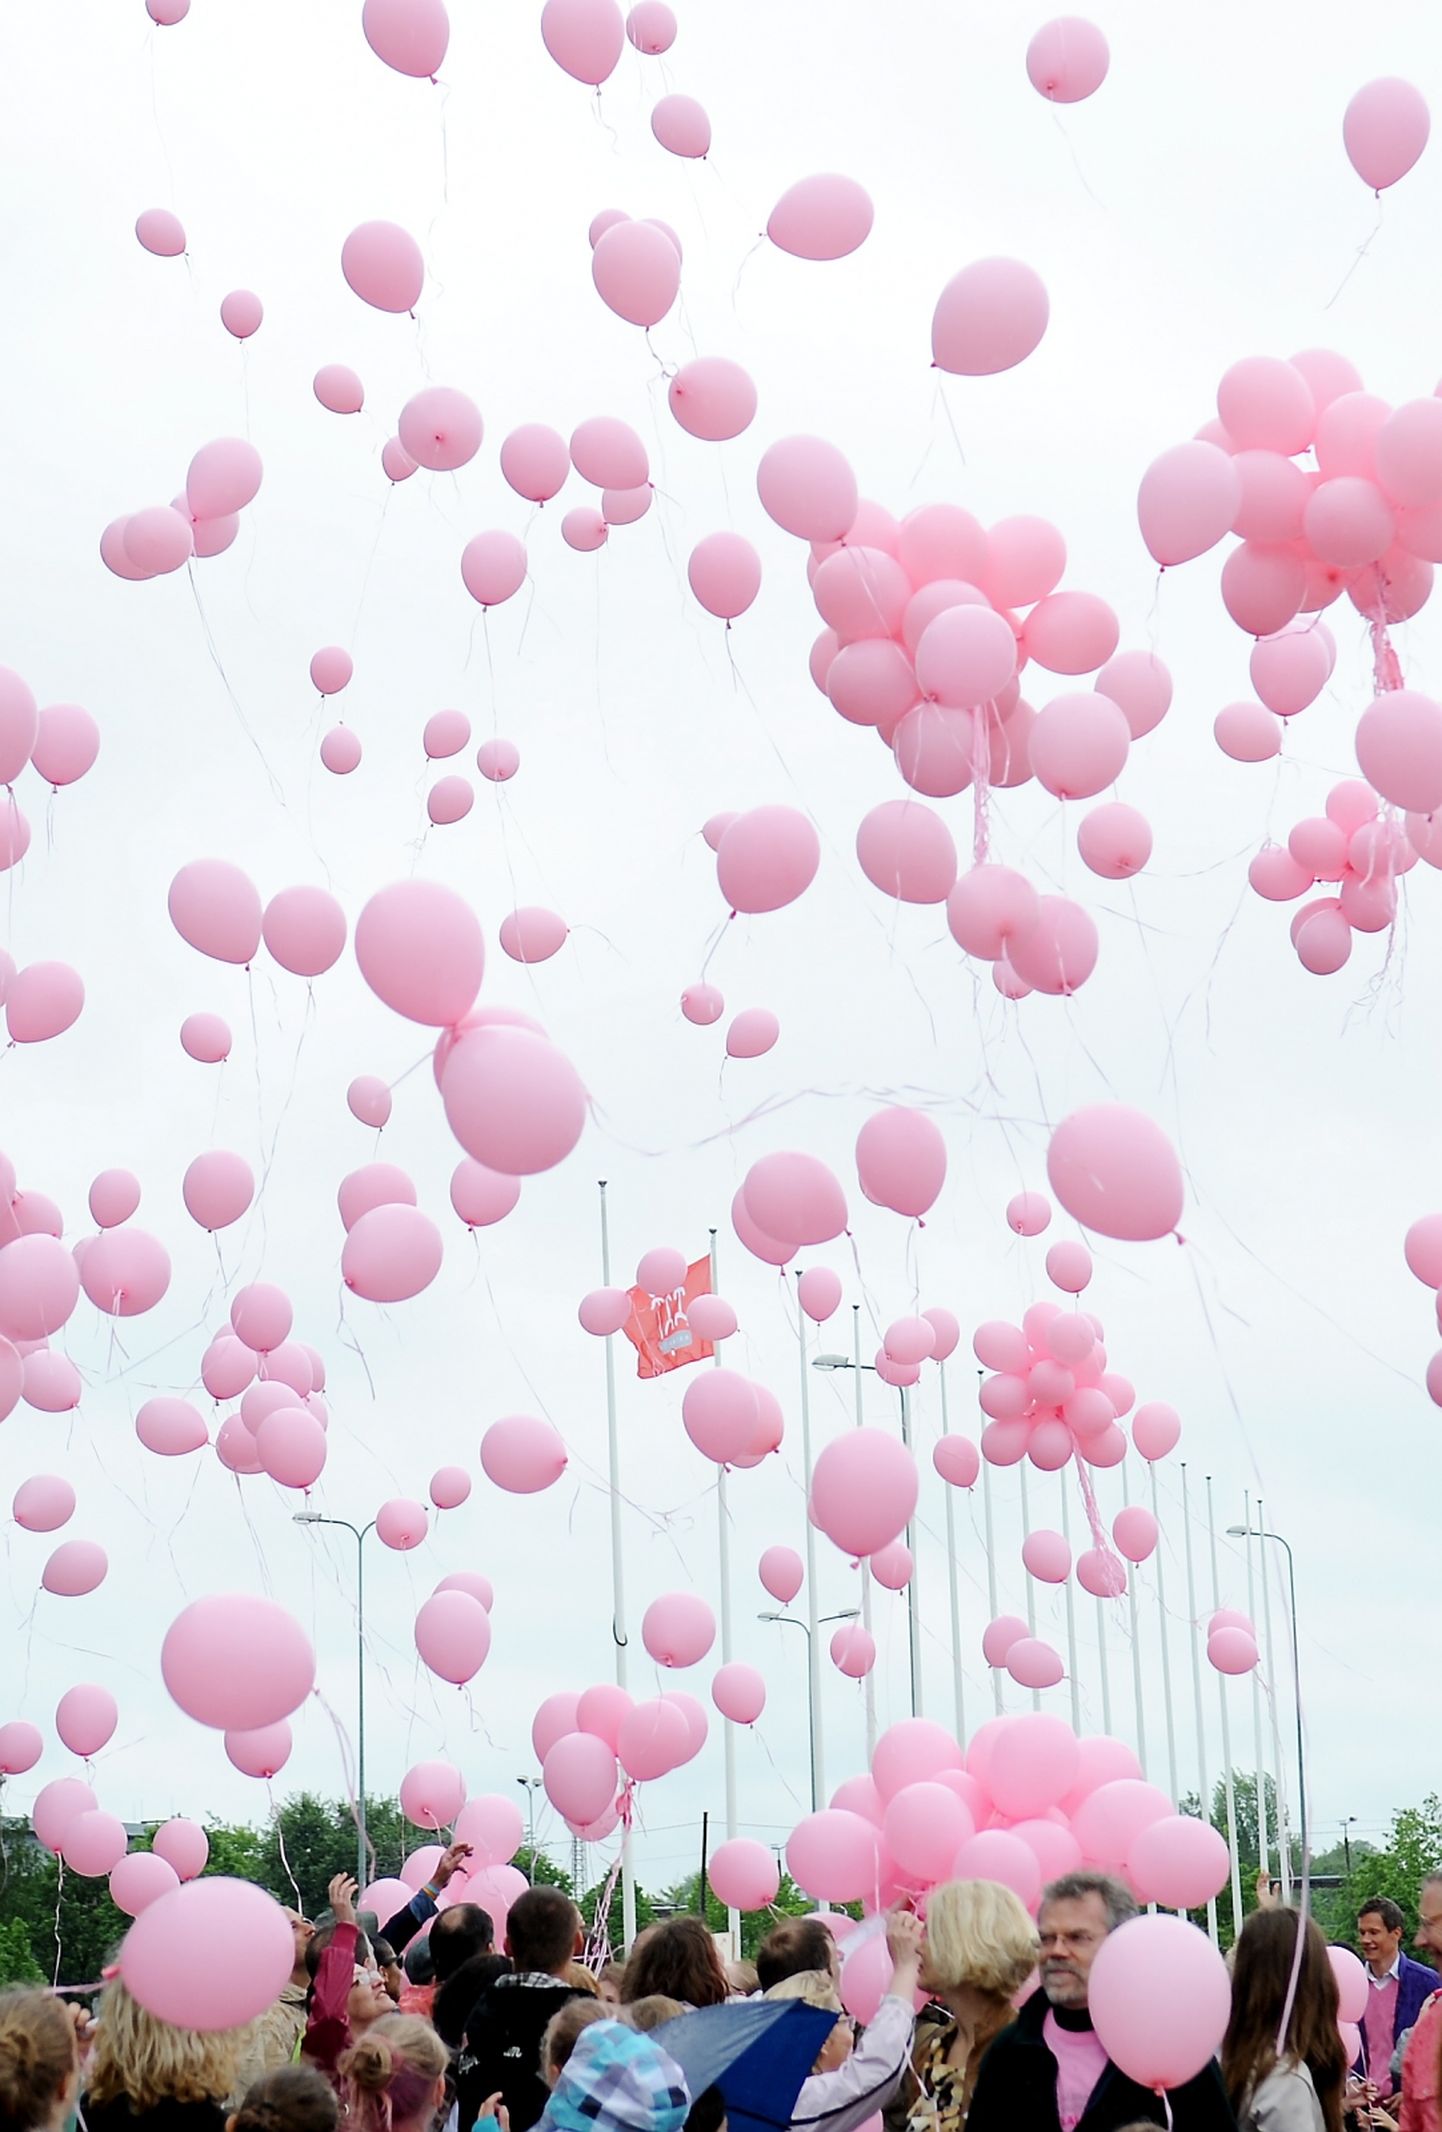 Запуск в небо шаров в рамках информационной кампании о раке груди